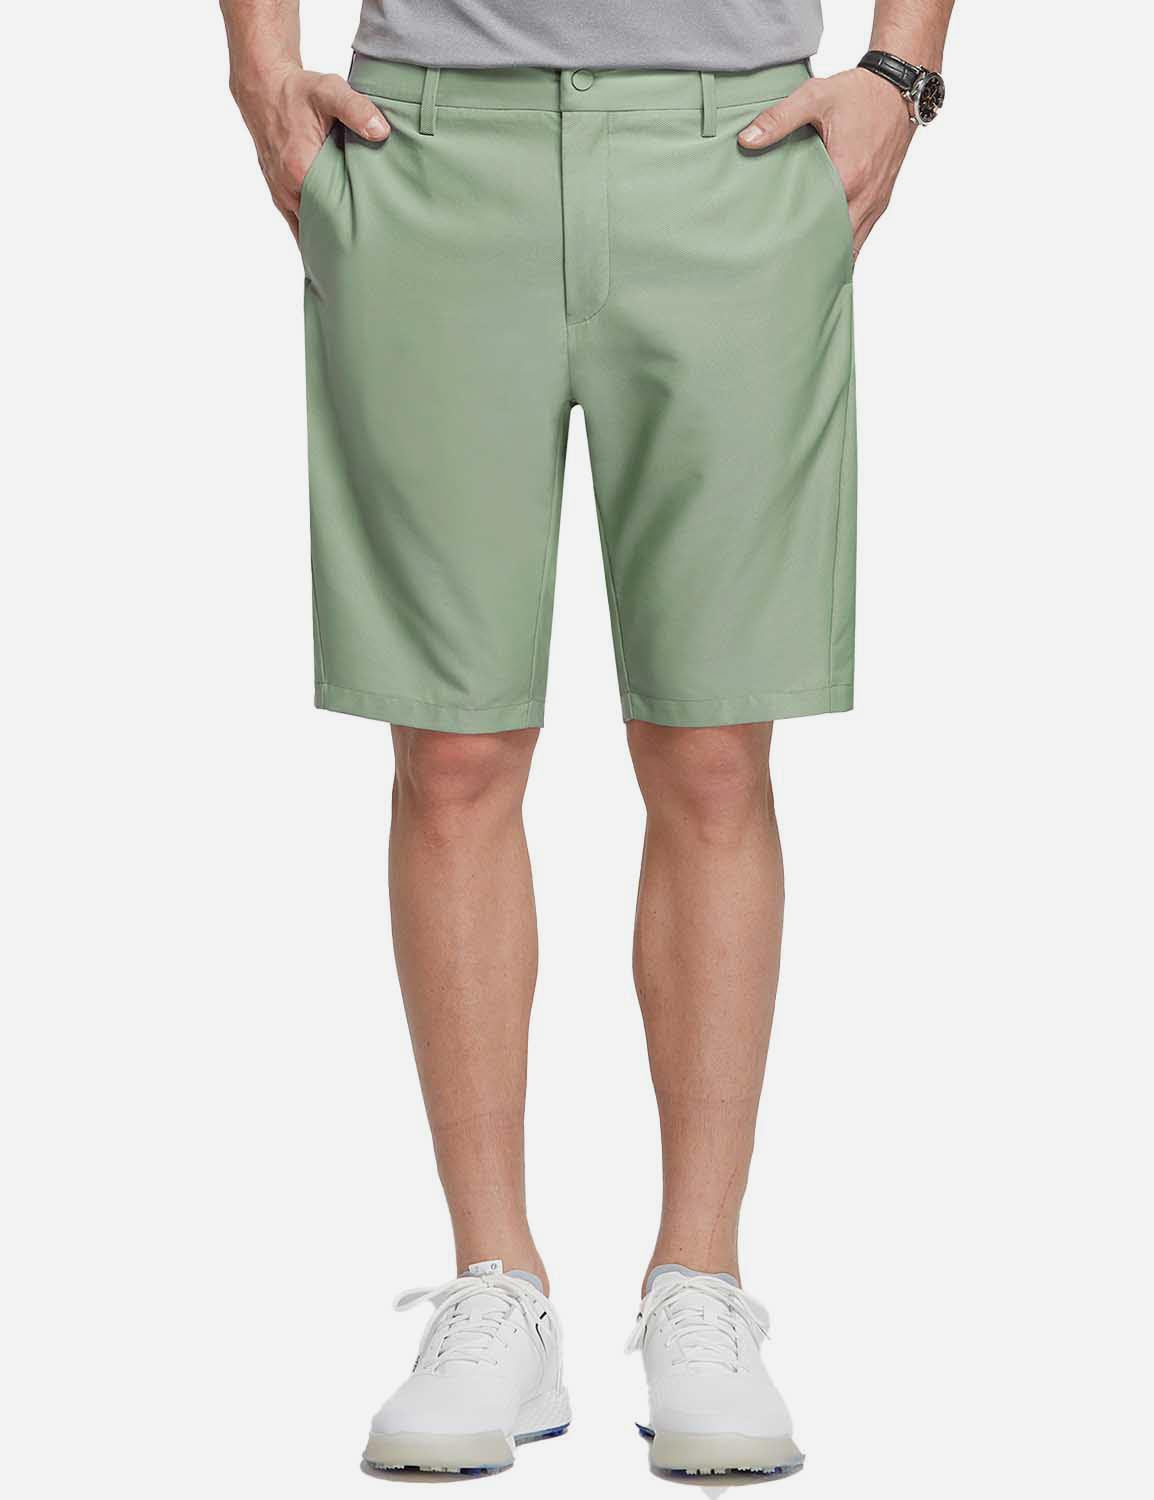 Baleaf Men's 10' UPF 50+ Lightweight Golf Shorts w Zipper Pockets cga005 Green Front